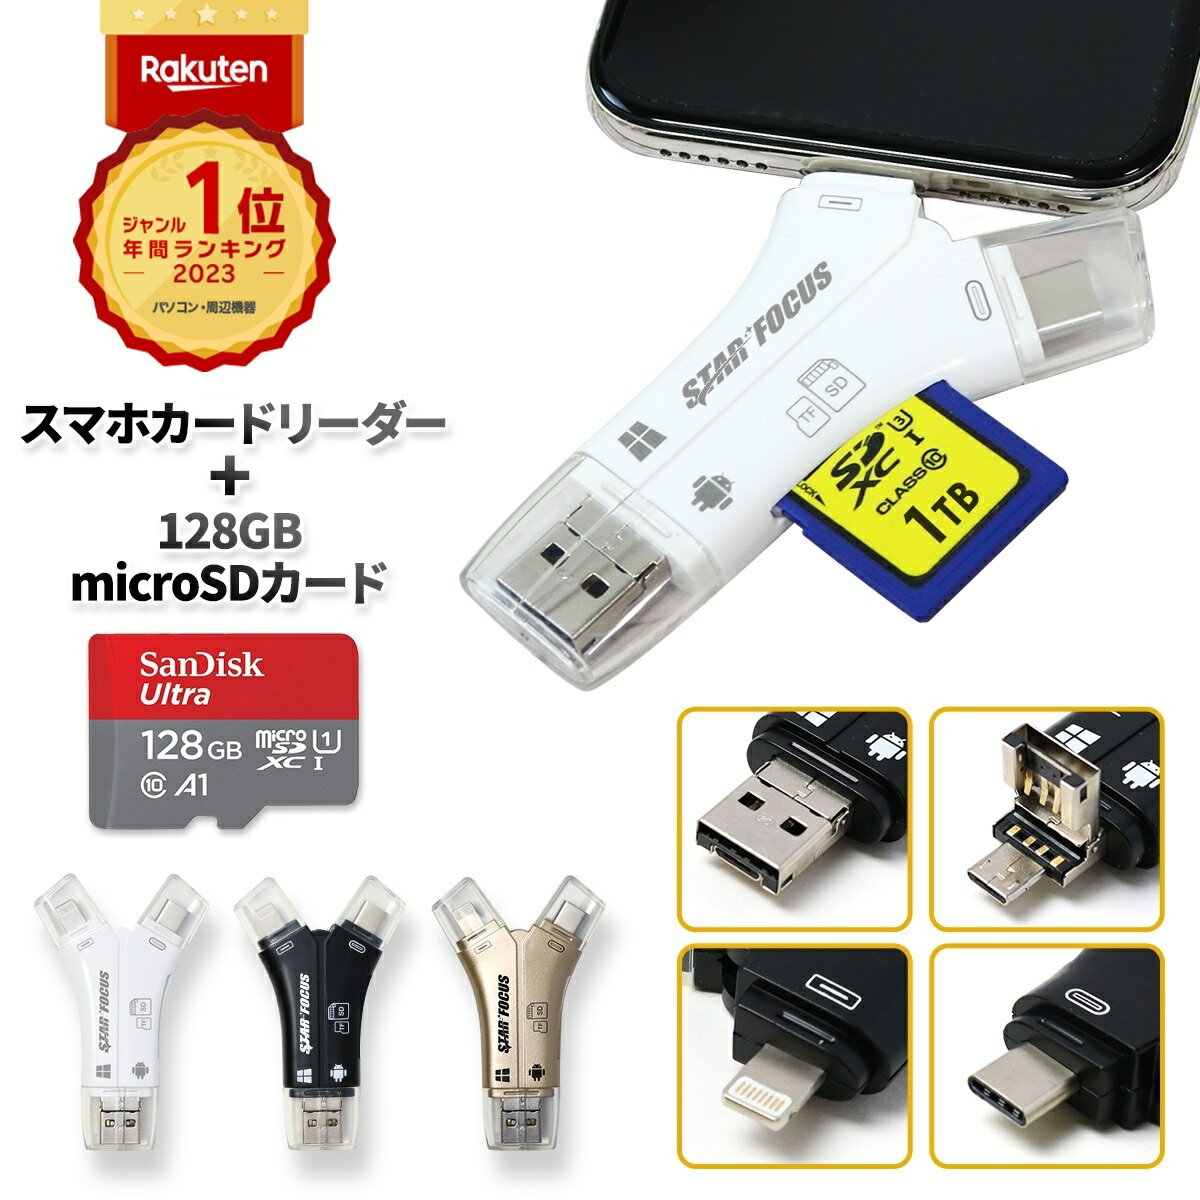 【マイクロSDカード 128GBセット】【楽天年間1位】【スターフォーカス正規品】送料無料 1年保証 日本語取説付 1TB対応 SDカードリーダー iPhone バックアップ USB USBメモリ 写真 microSDカードリーダー データ SDカードカメラリーダー